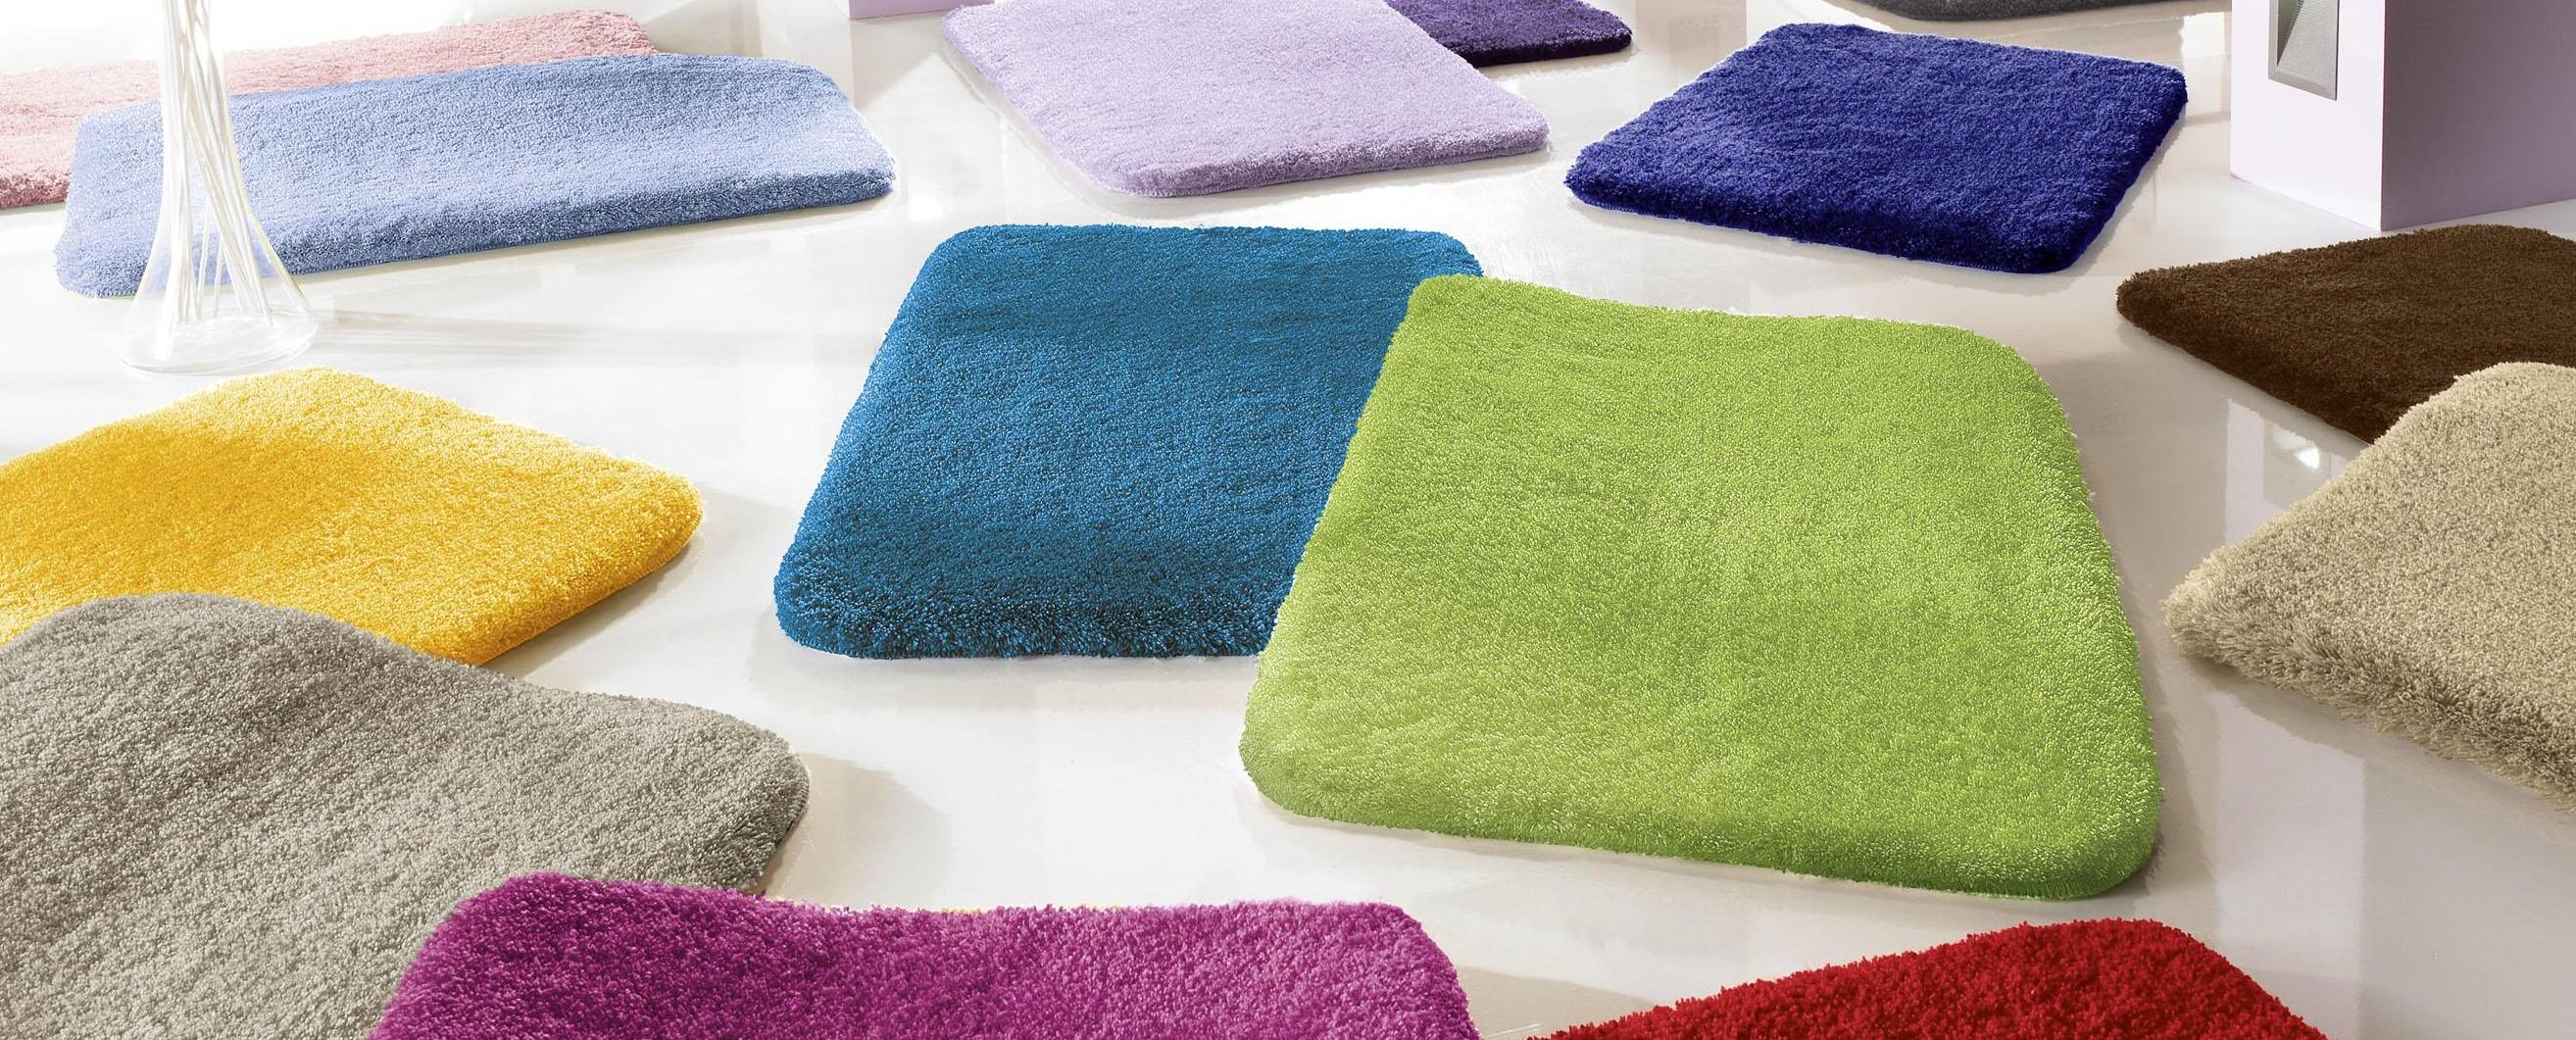 Красиво, комфортно, уютно: фото интересных ковриков для ванной и советы по выбору